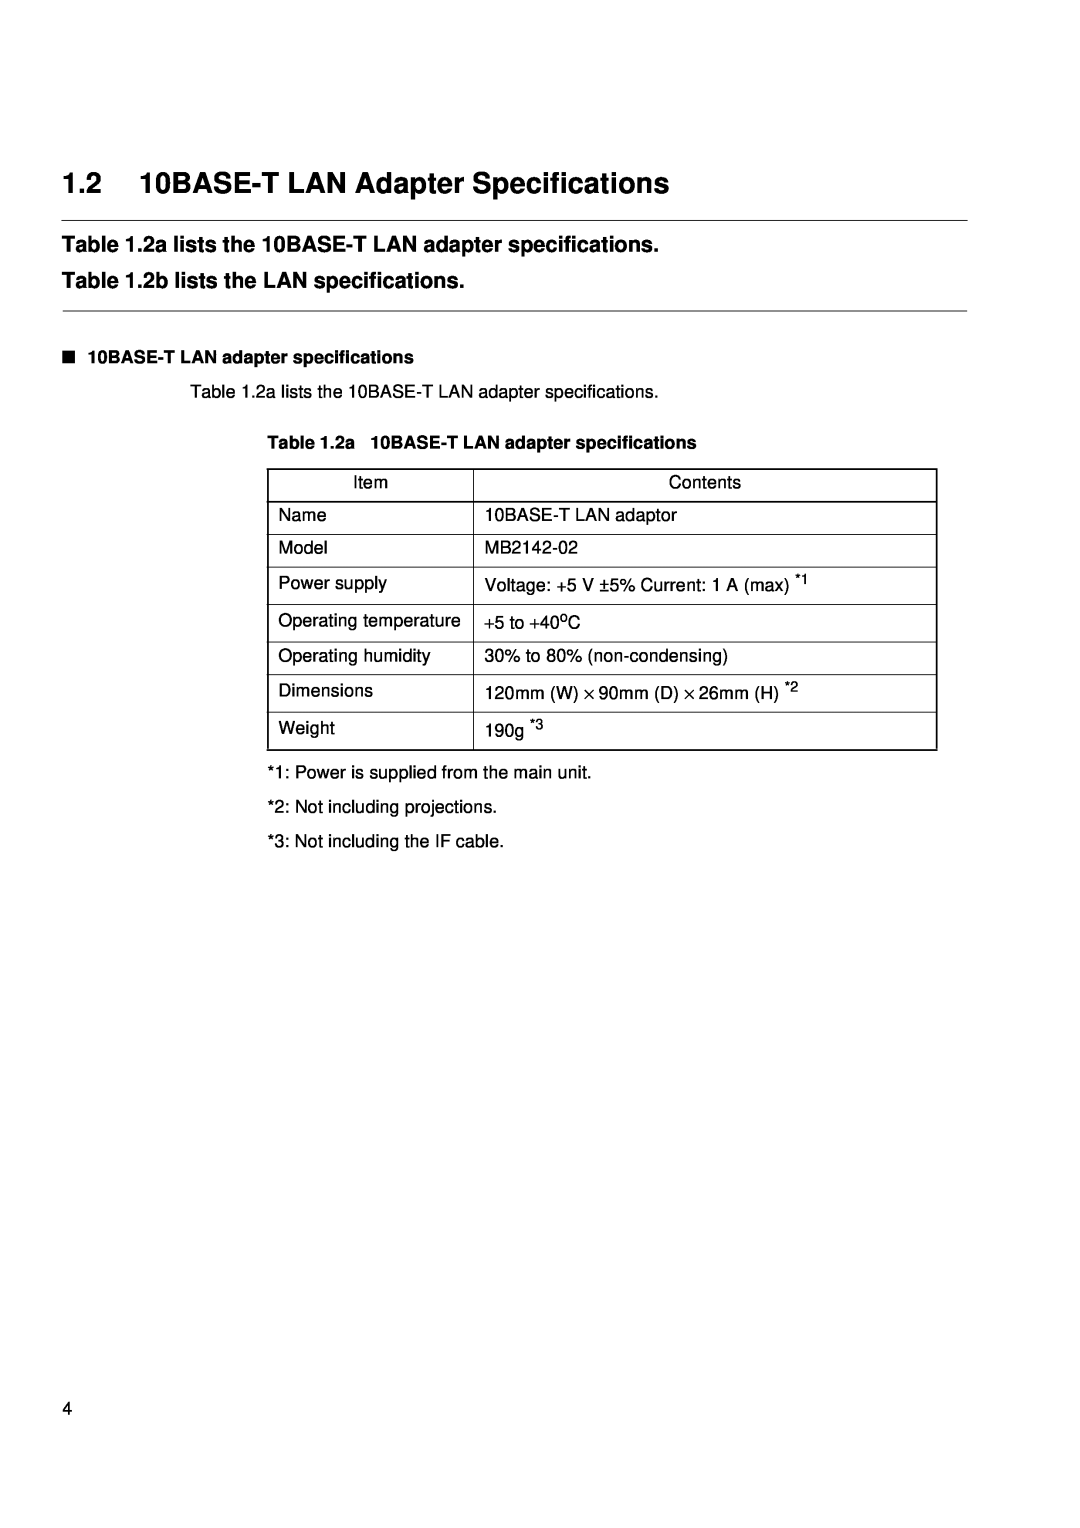 Fujitsu MB2142-02 user manual 1.2 10BASE-T LAN Adapter Specifications, 2a lists the 10BASE-T LAN adapter specifications 